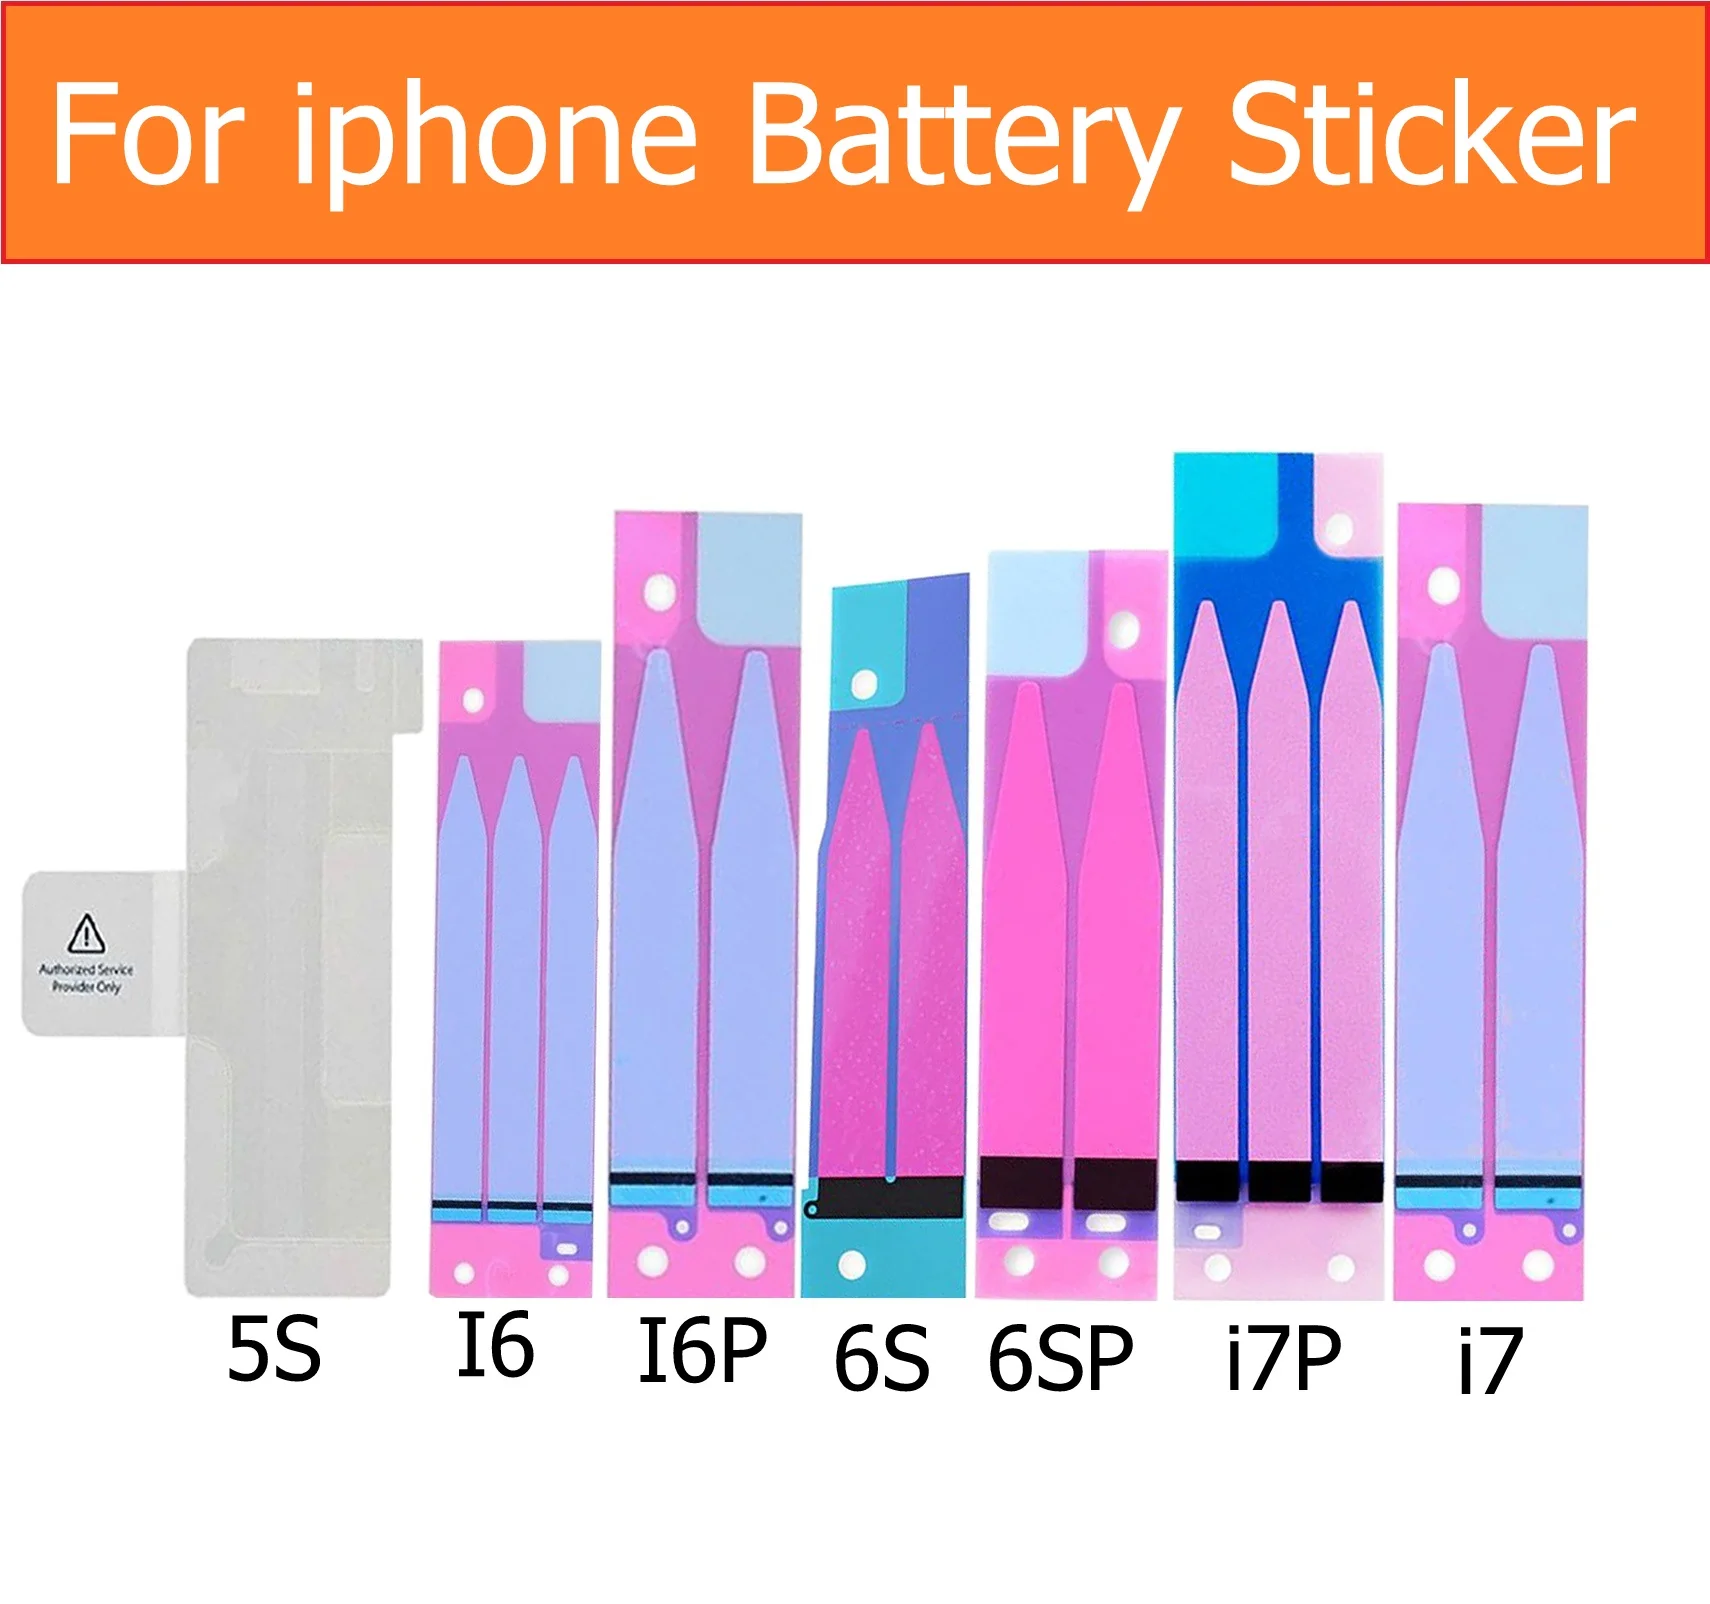 Pil Sticker iPhone 4 4s 5 5c 5s SE 6 6S artı Pil Yapıştırıcı tutkal Bant iphone 7 7 artı pil tutkal etiket şerit